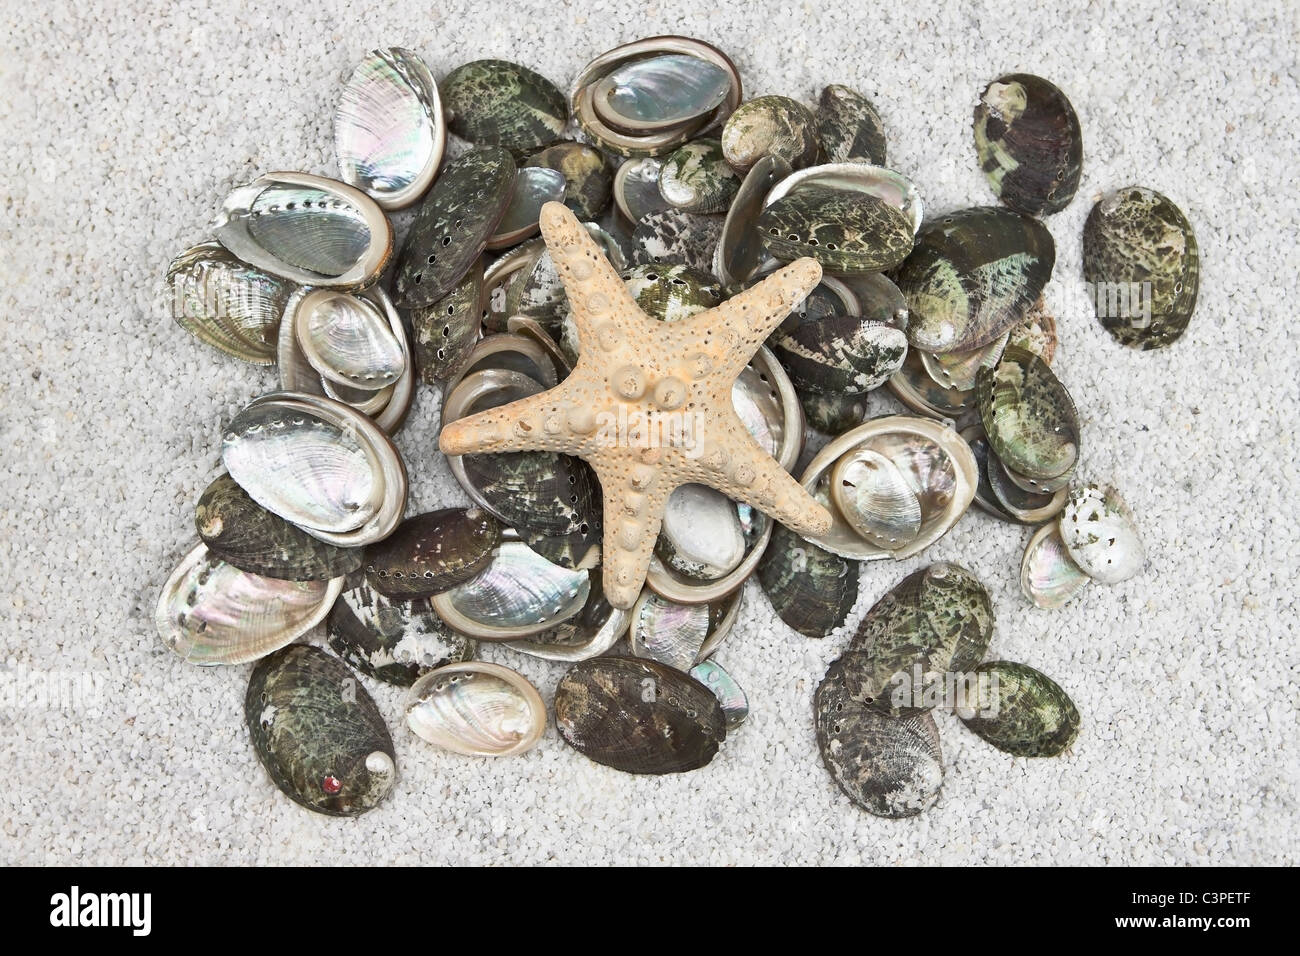 Plusieurs coquillages sur le sable blanc avec une étoile de mer Banque D'Images